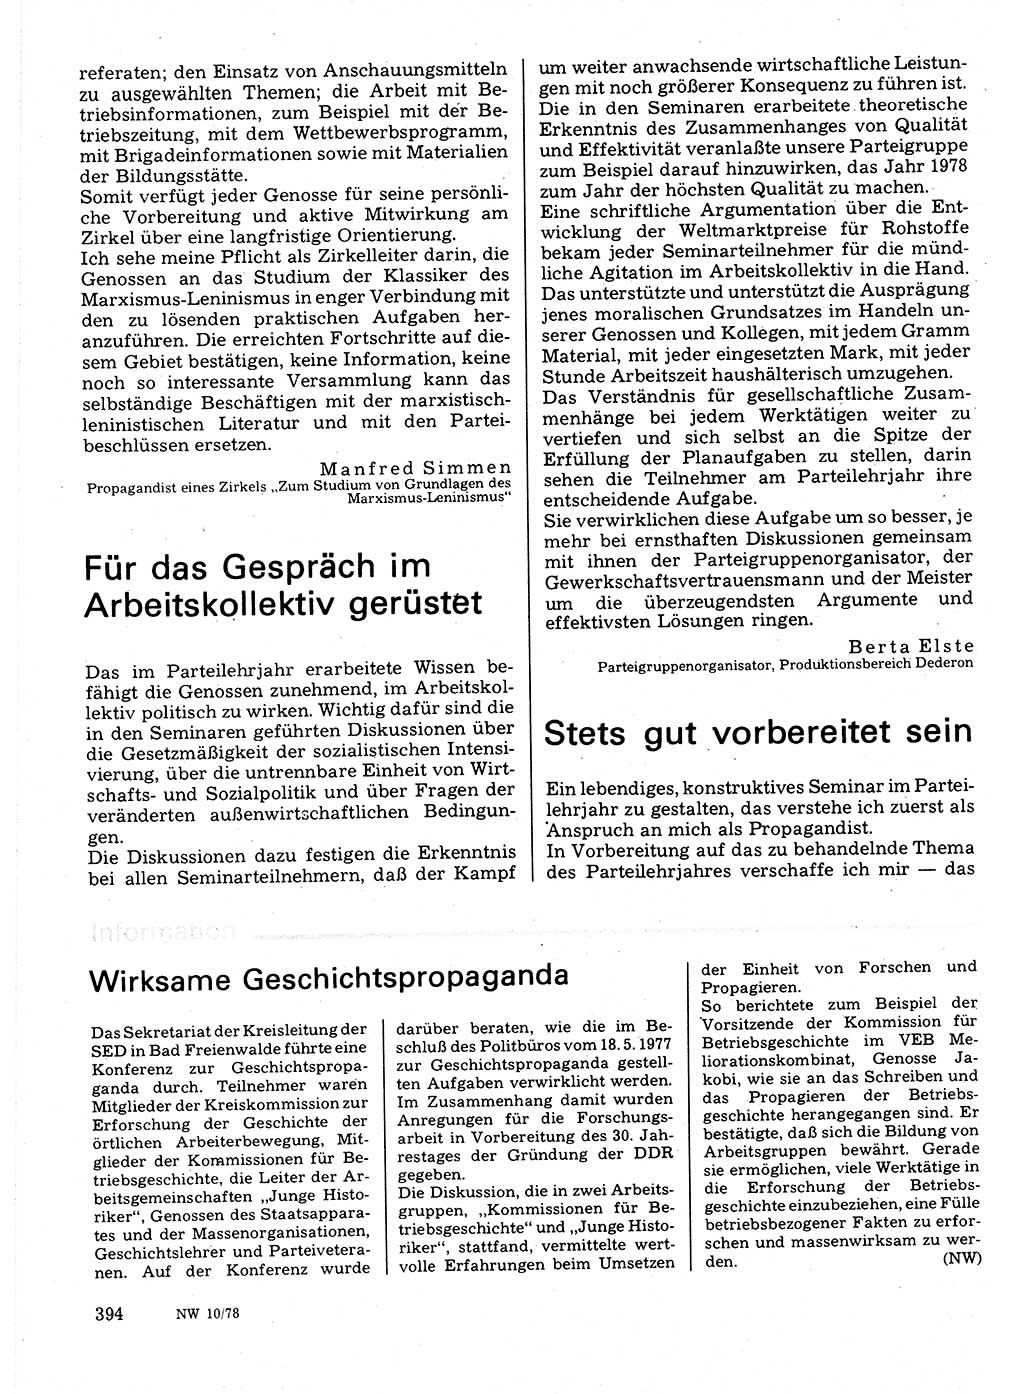 Neuer Weg (NW), Organ des Zentralkomitees (ZK) der SED (Sozialistische Einheitspartei Deutschlands) für Fragen des Parteilebens, 33. Jahrgang [Deutsche Demokratische Republik (DDR)] 1978, Seite 394 (NW ZK SED DDR 1978, S. 394)